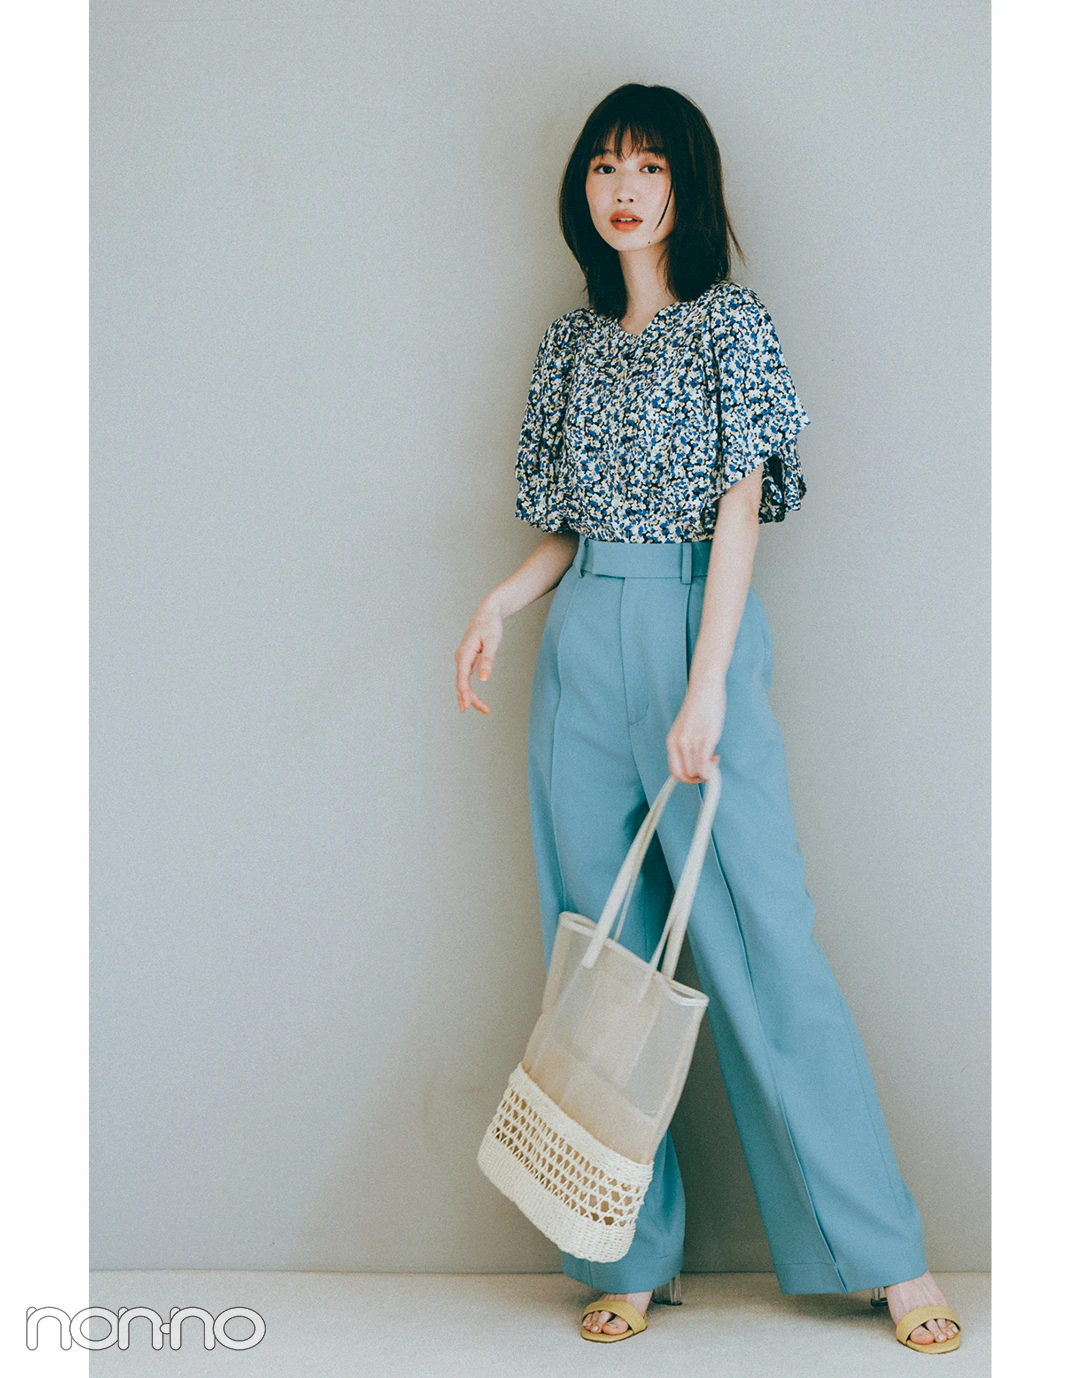 『岡本夏美』の『ブルーのカラーパンツ』モデルカット3-3